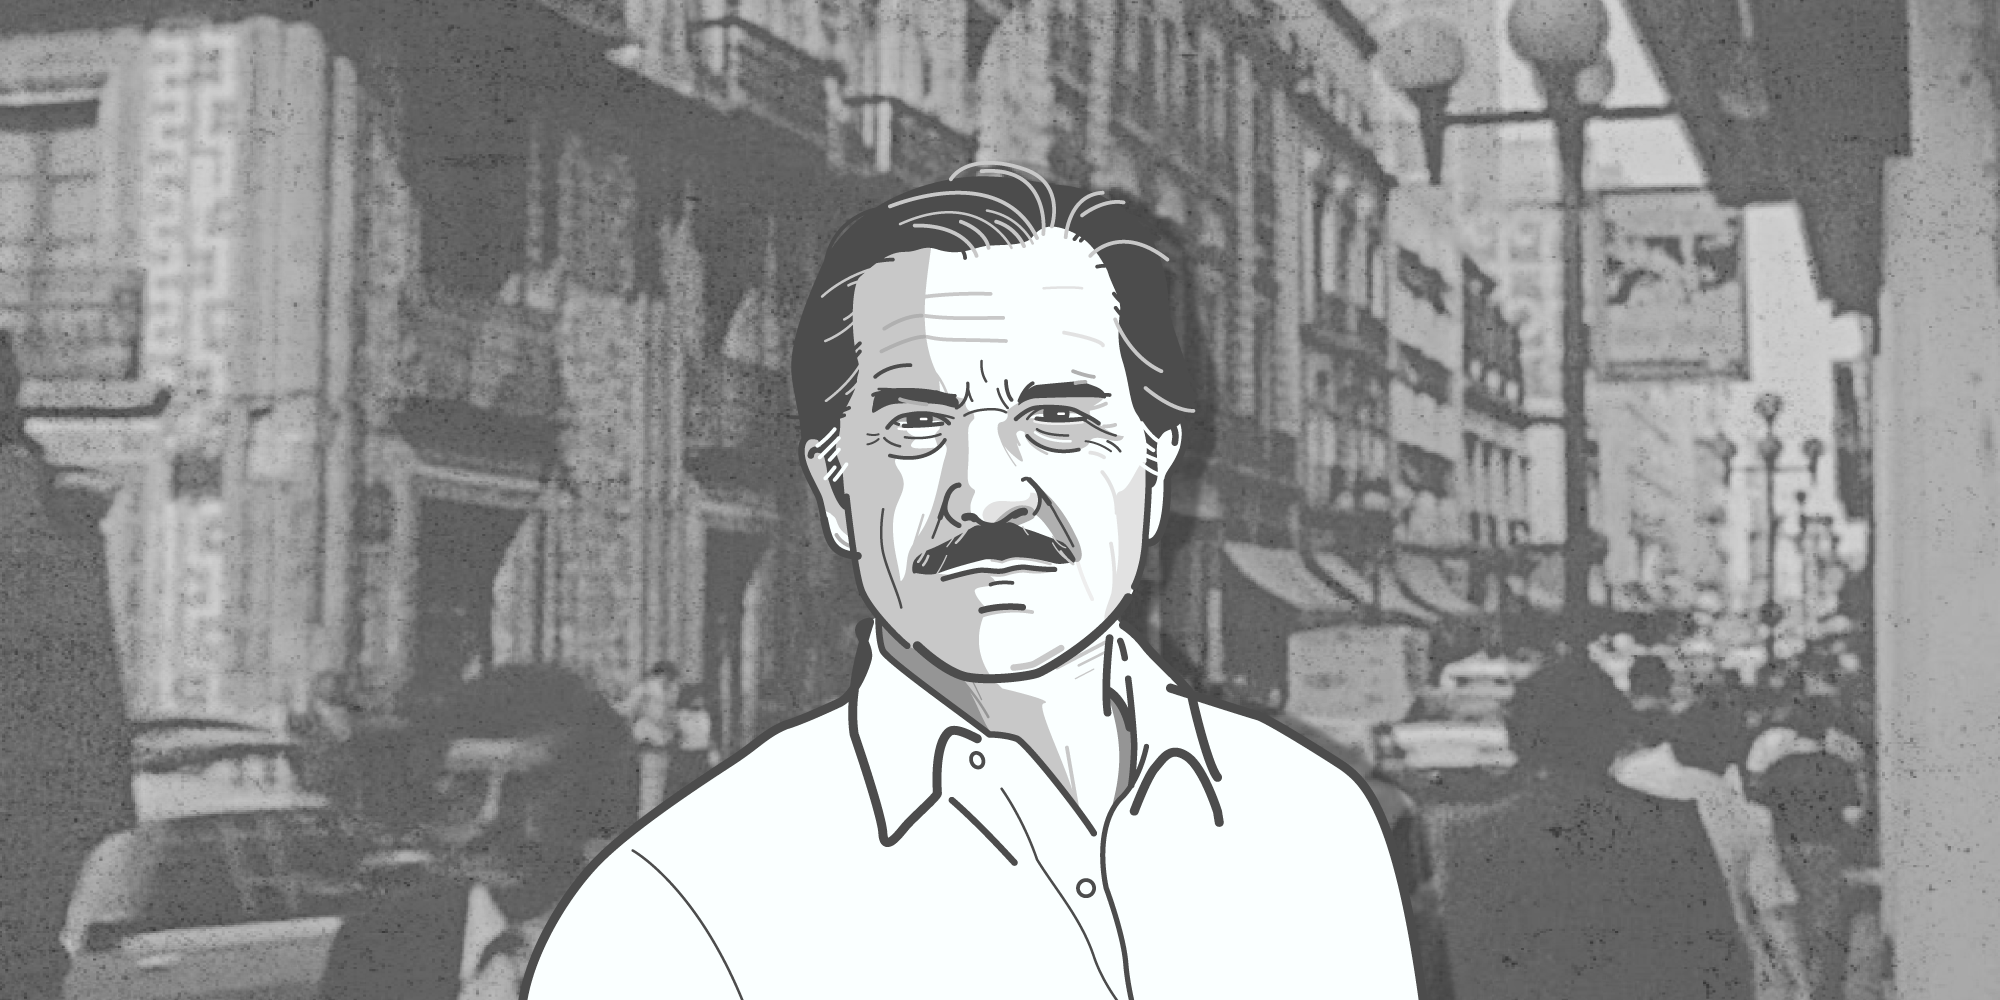 La influencia de la Ciudad de México en la obra de Carlos Fuentes